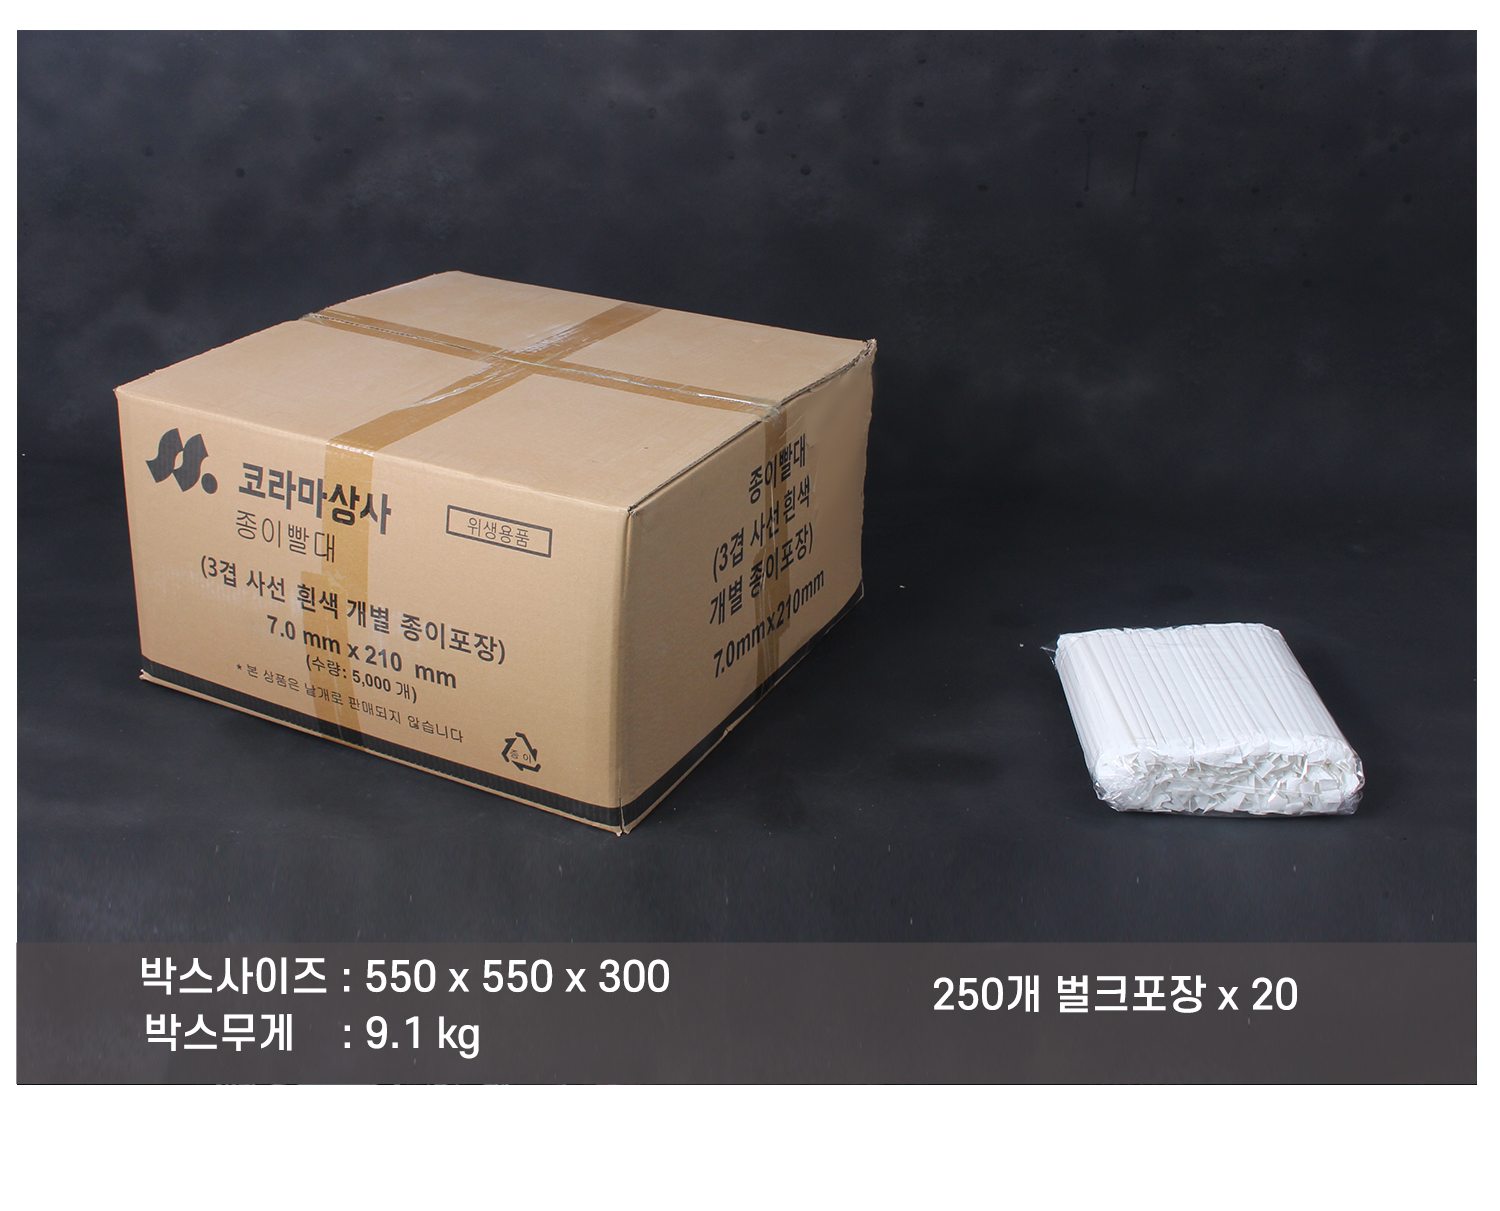 배송되는 박스의 사이즈와 무게가 표기된 이미지가 있다. 박스 내 소포장 단위의 묶음이 박스 옆에 놓여있다.